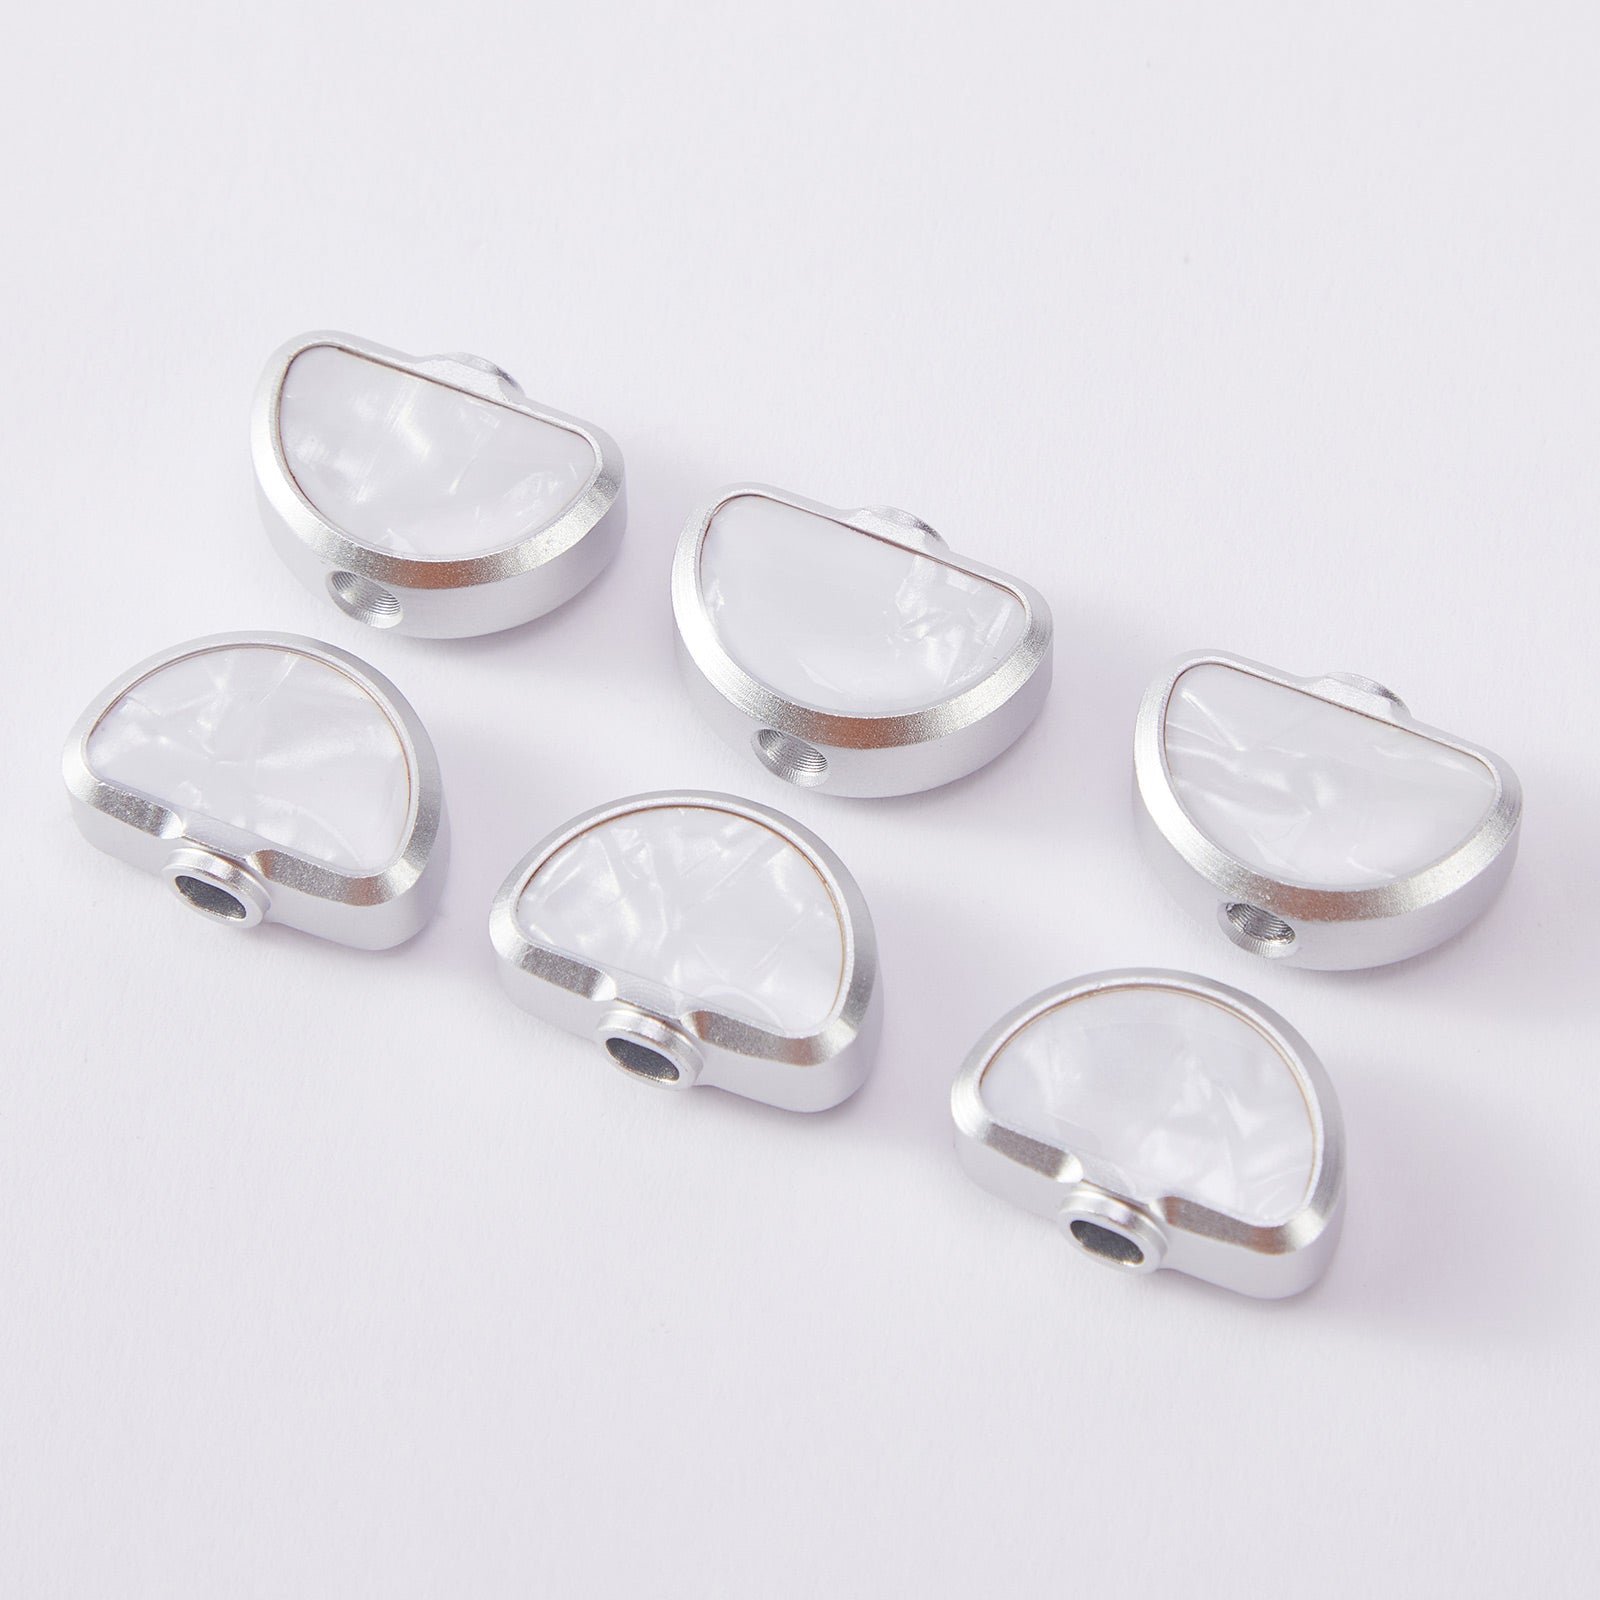  p04-guyker-white-shell-shape-tunner-buttons-6-pcs